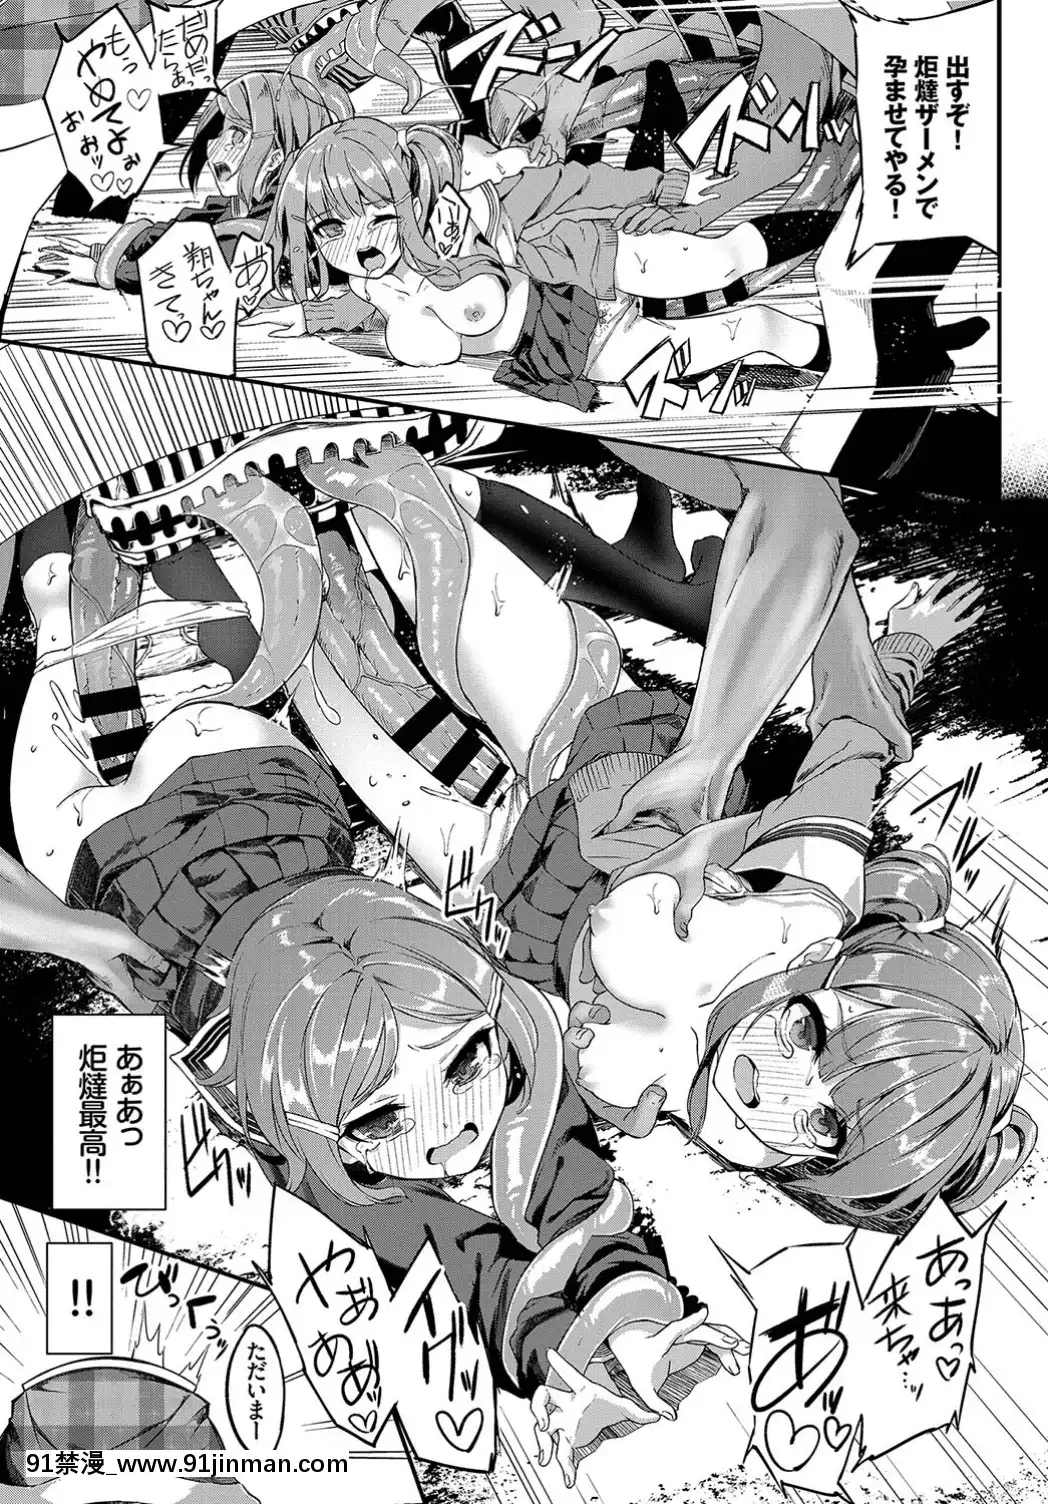 (Truyện tranh Seinen) [Khác] COMICBAVEL 2019 tháng 6 [Kỹ thuật số]【truyện tranh doremon bong chay】